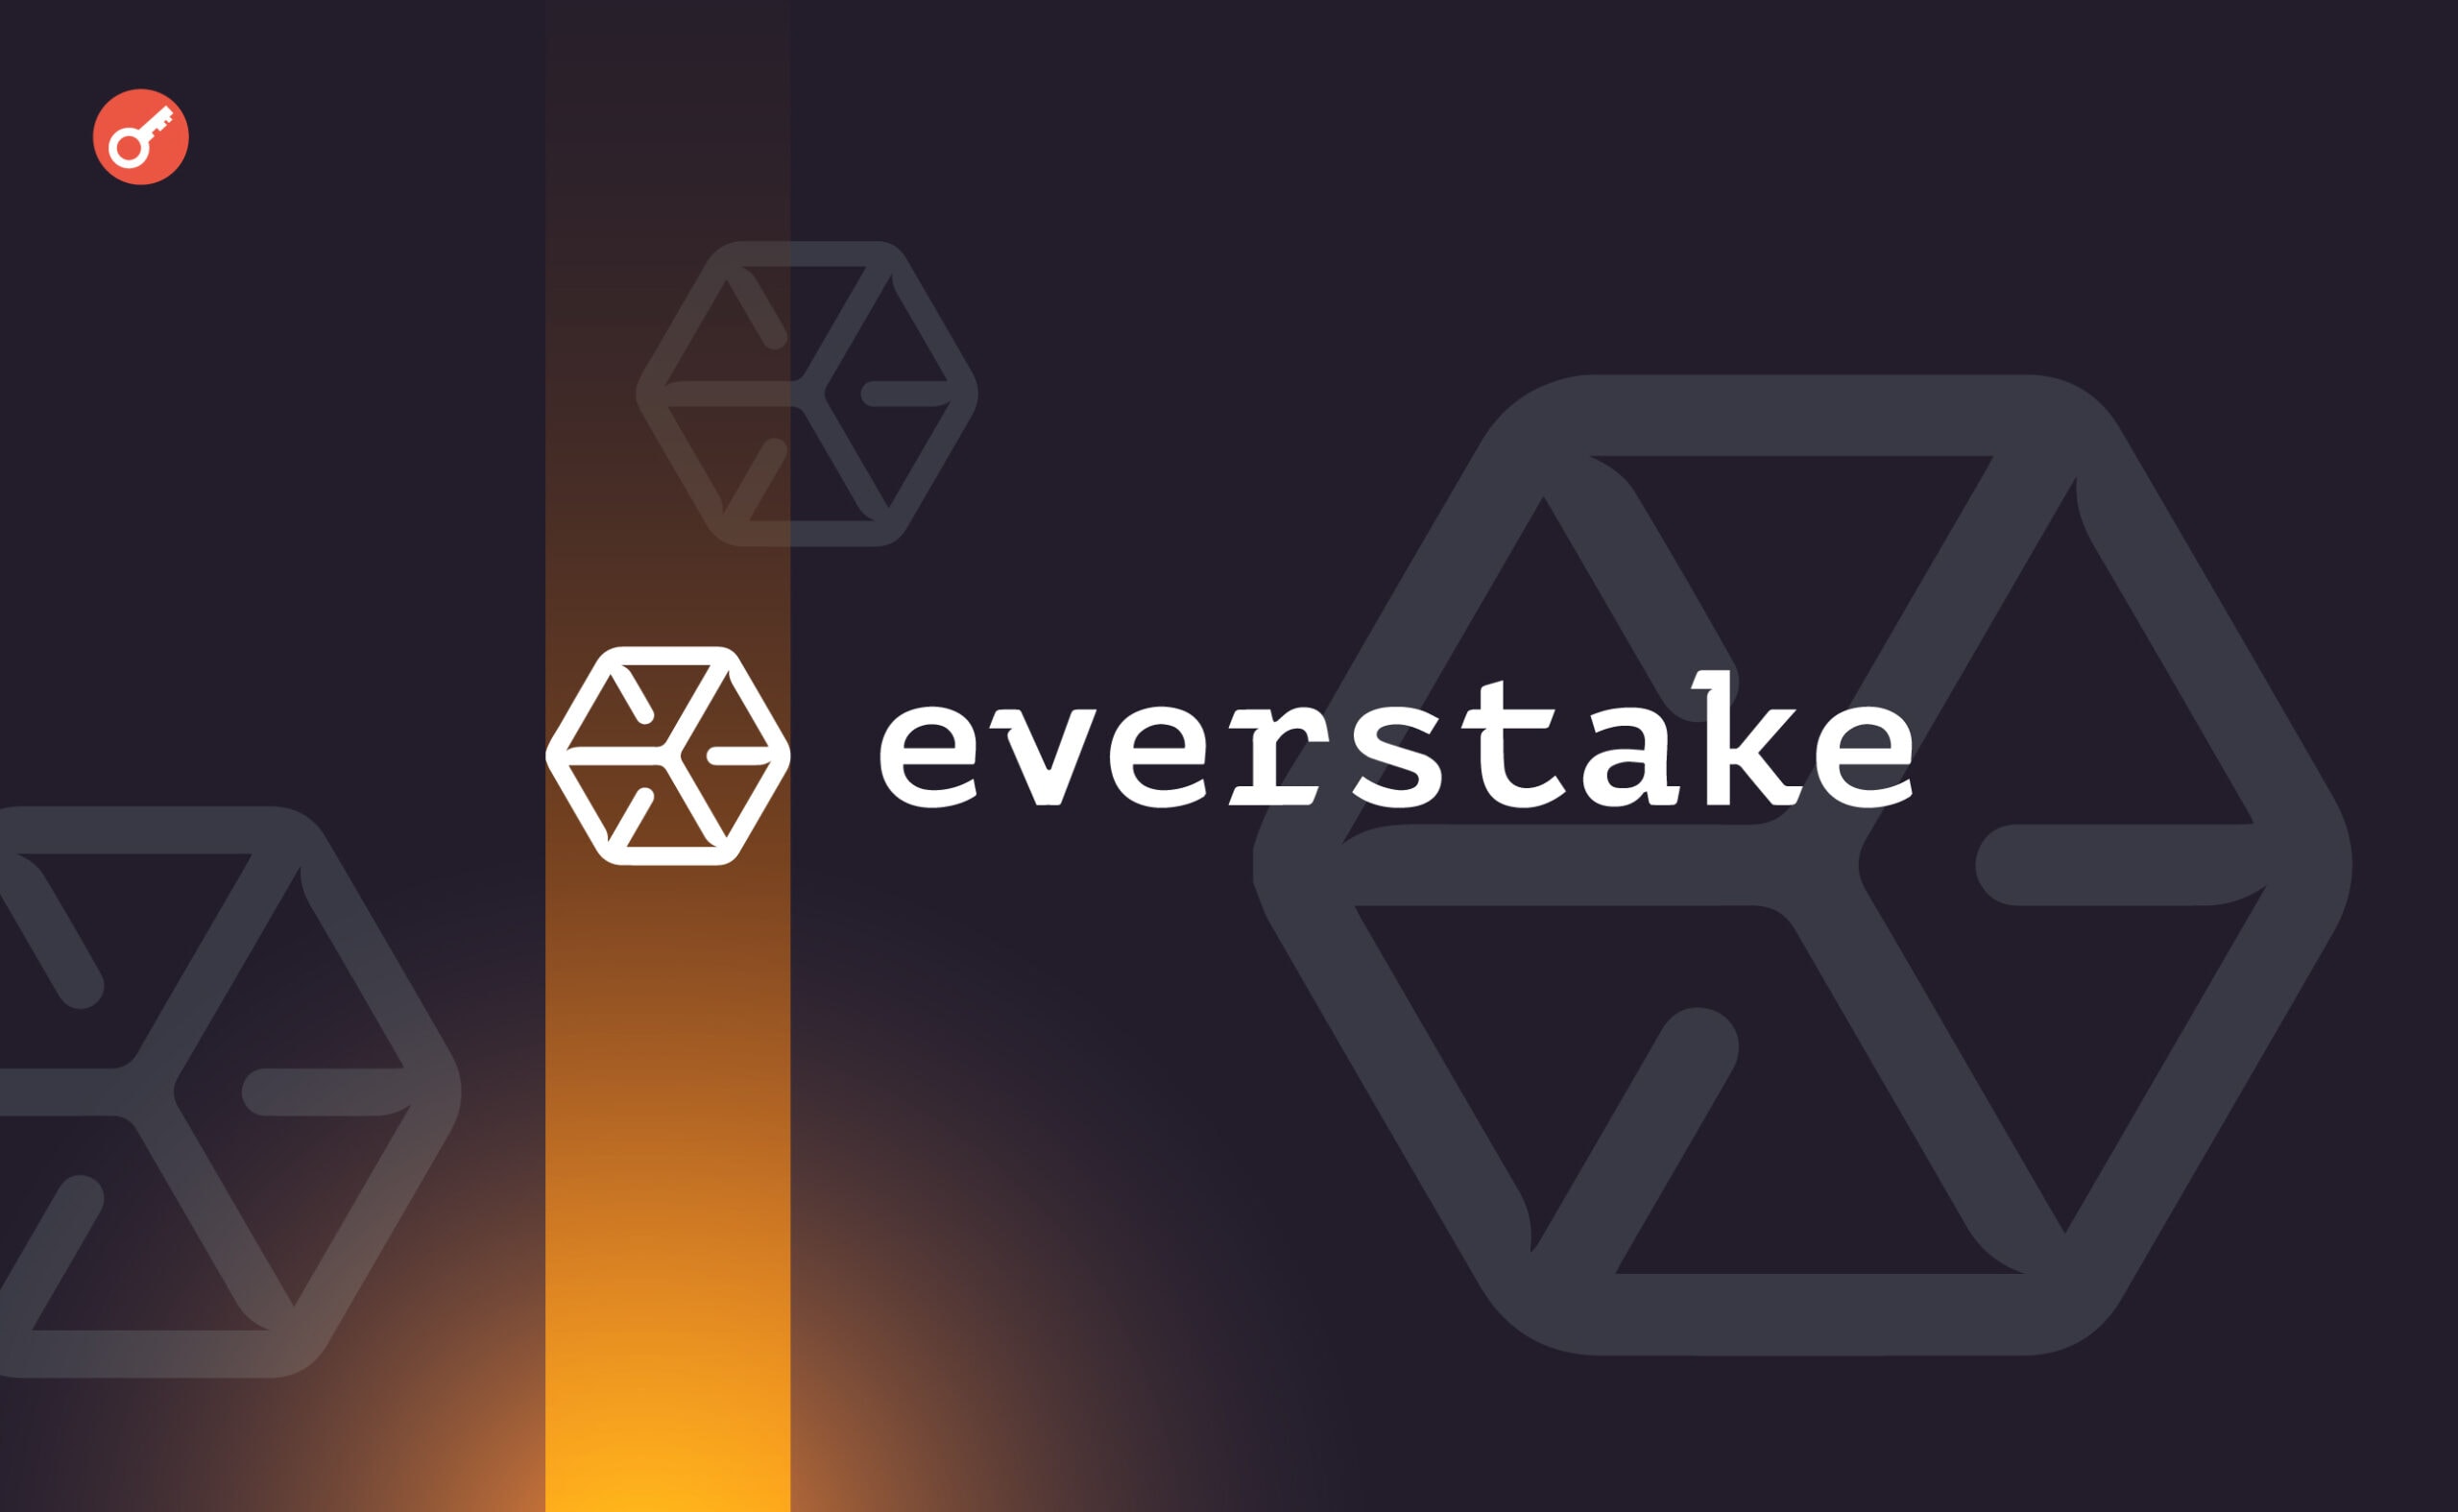 Everstake запустила стейкинг Ethereum с порогом в 0,1 ETH. Заглавный коллаж новости.